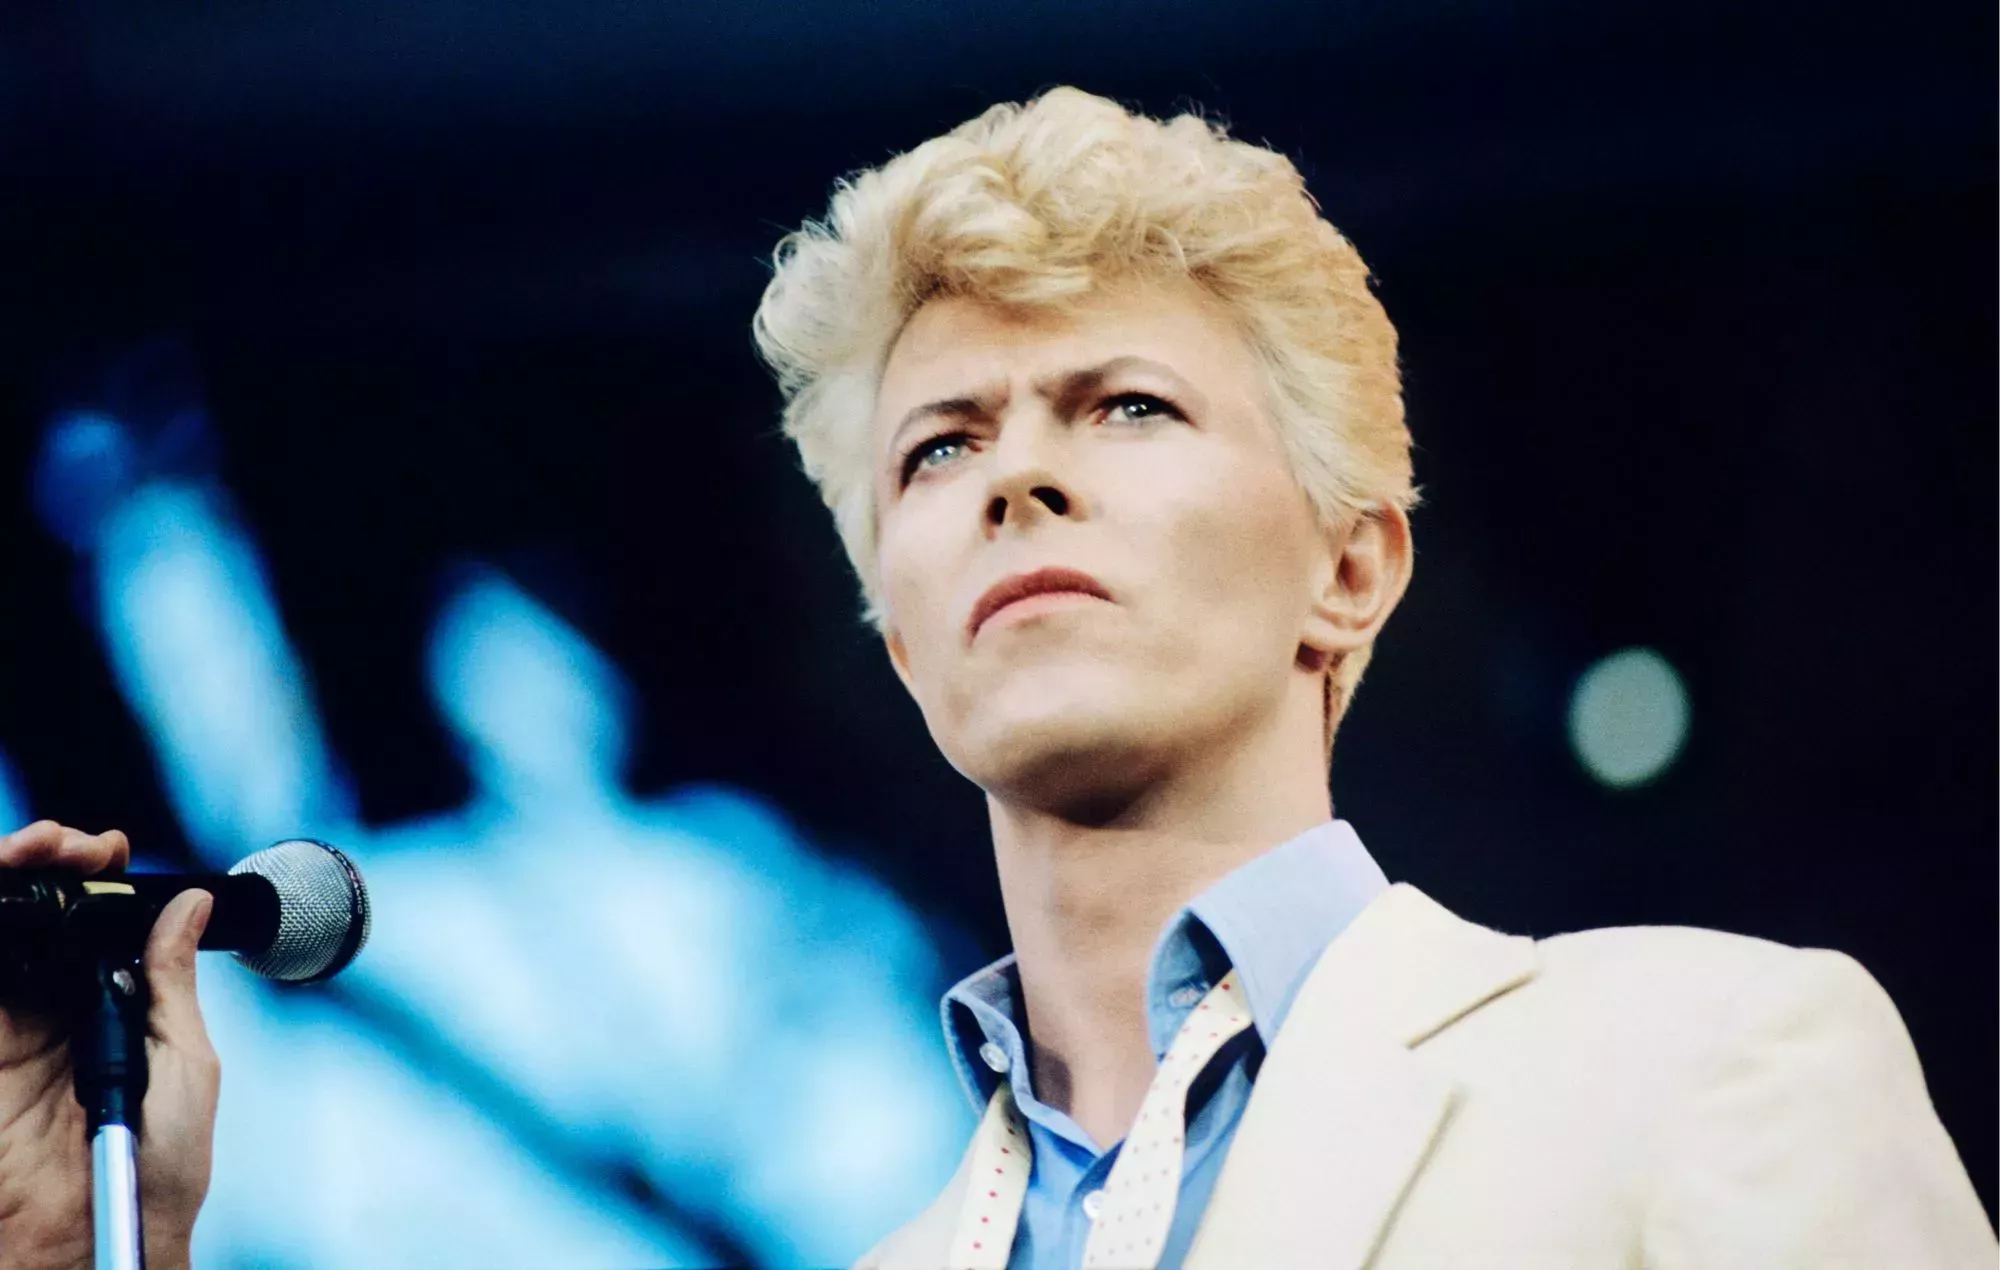 La próxima semana se inaugurará en París una calle con el nombre de David Bowie, pero el Reino Unido no tiene ninguna